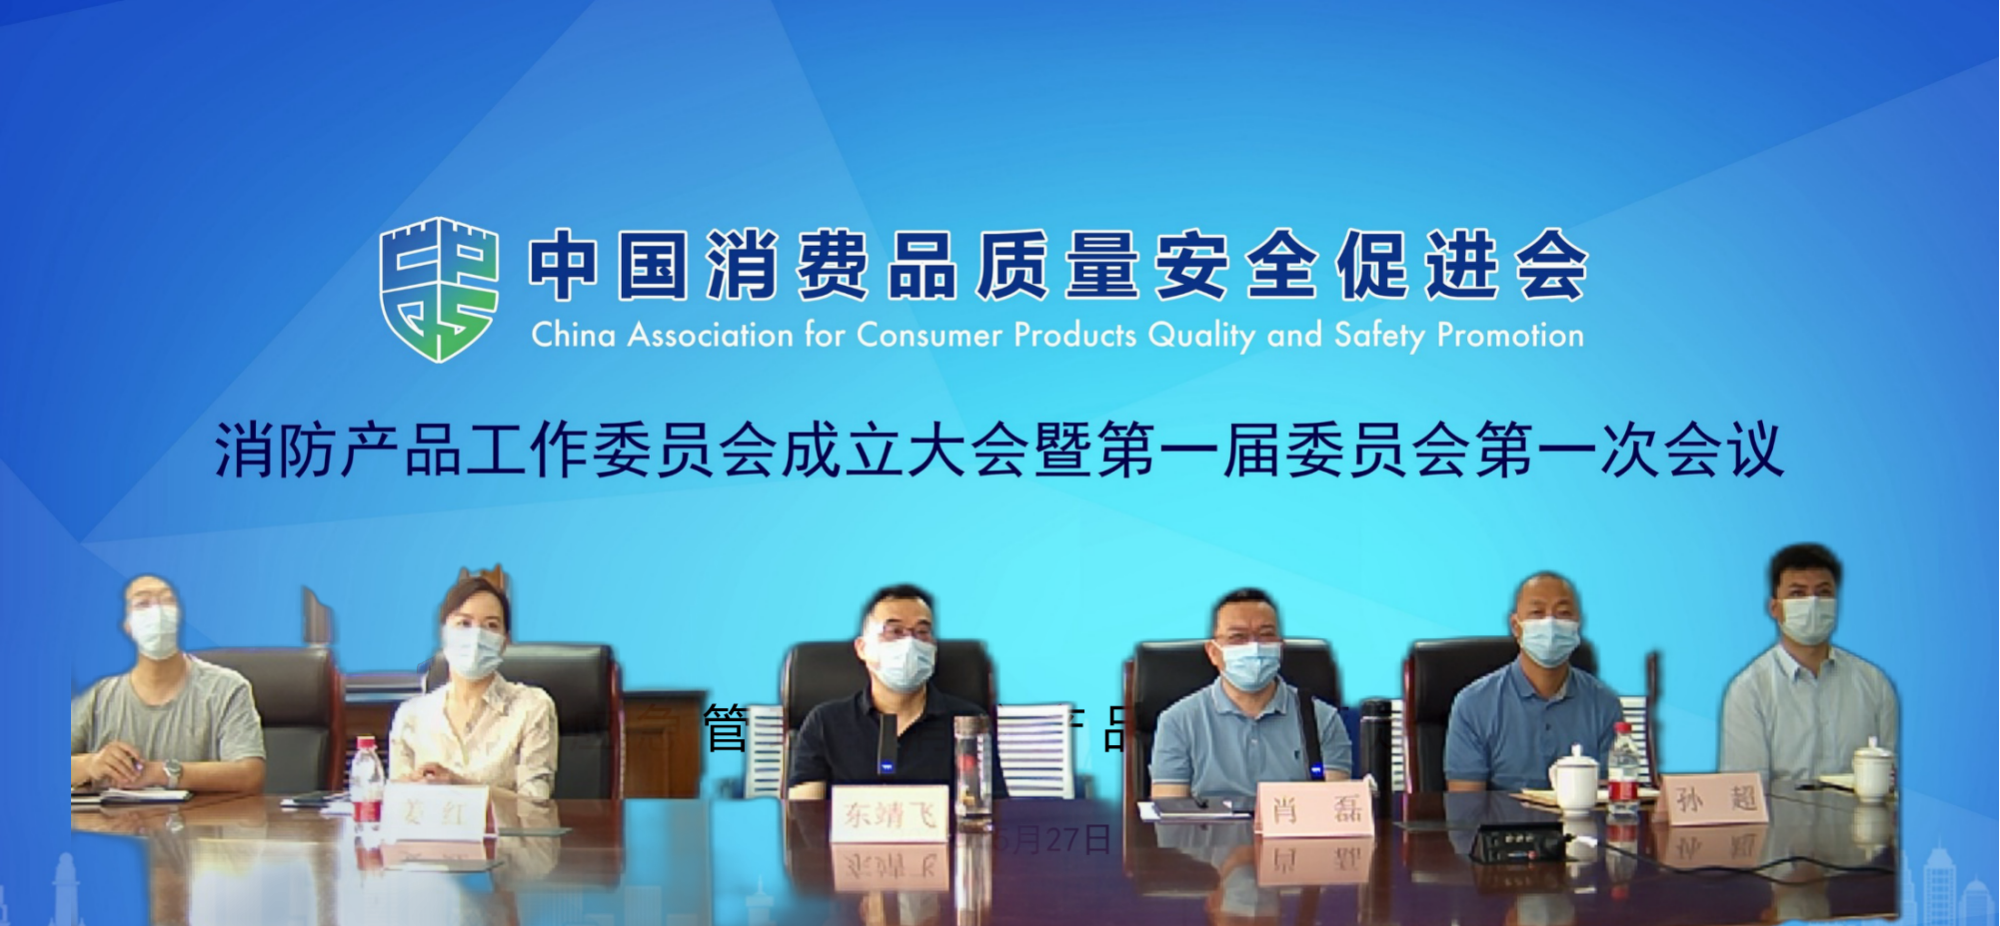 图为中消会消防产品工作委员会第一届委员会线上会议现场。来源：中国消费品质量安全促进会